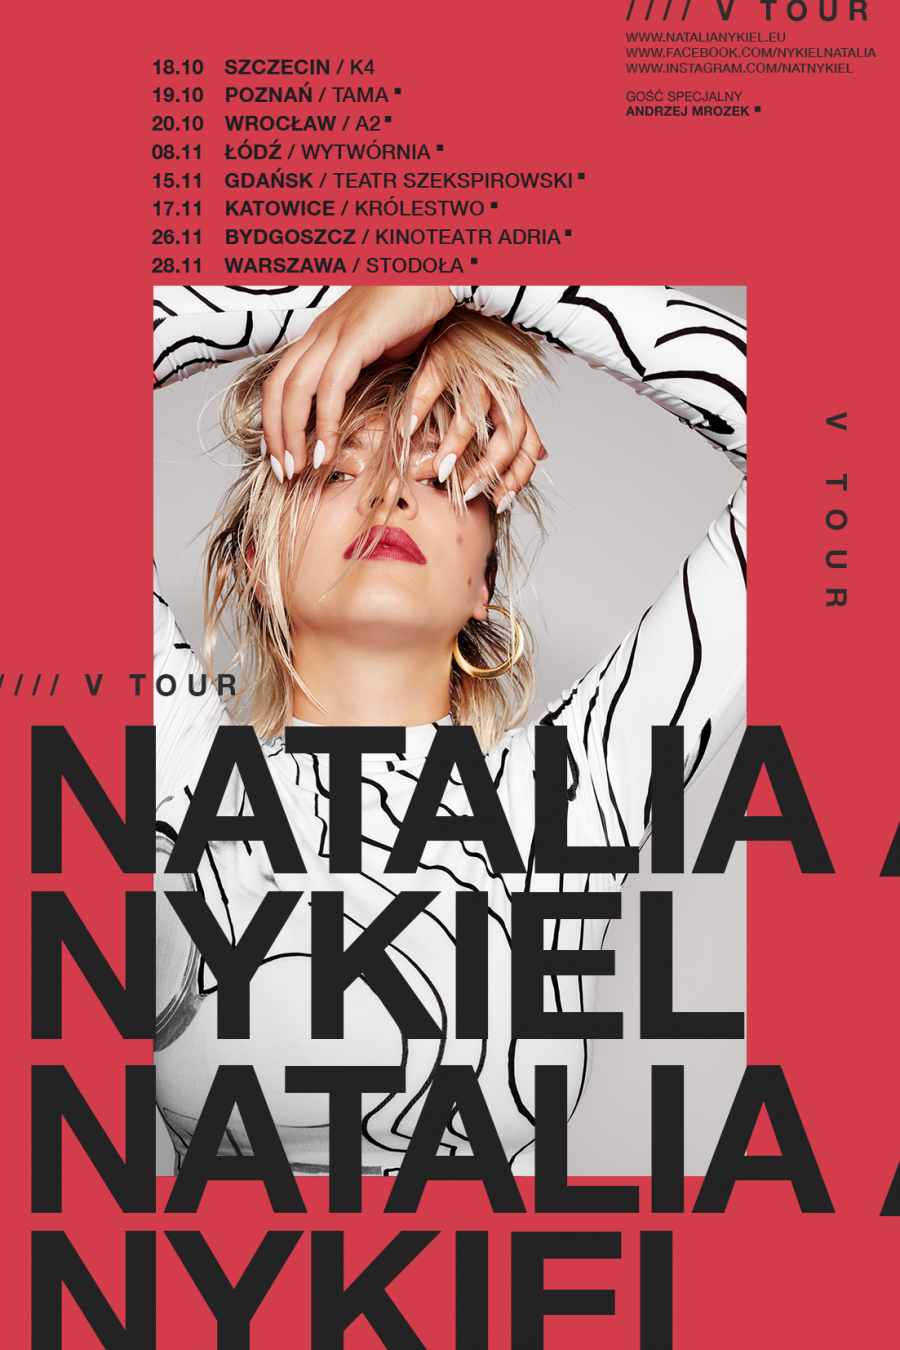 Nykiel_V-Tour_plakat_net_MIASTA_26-10-2018